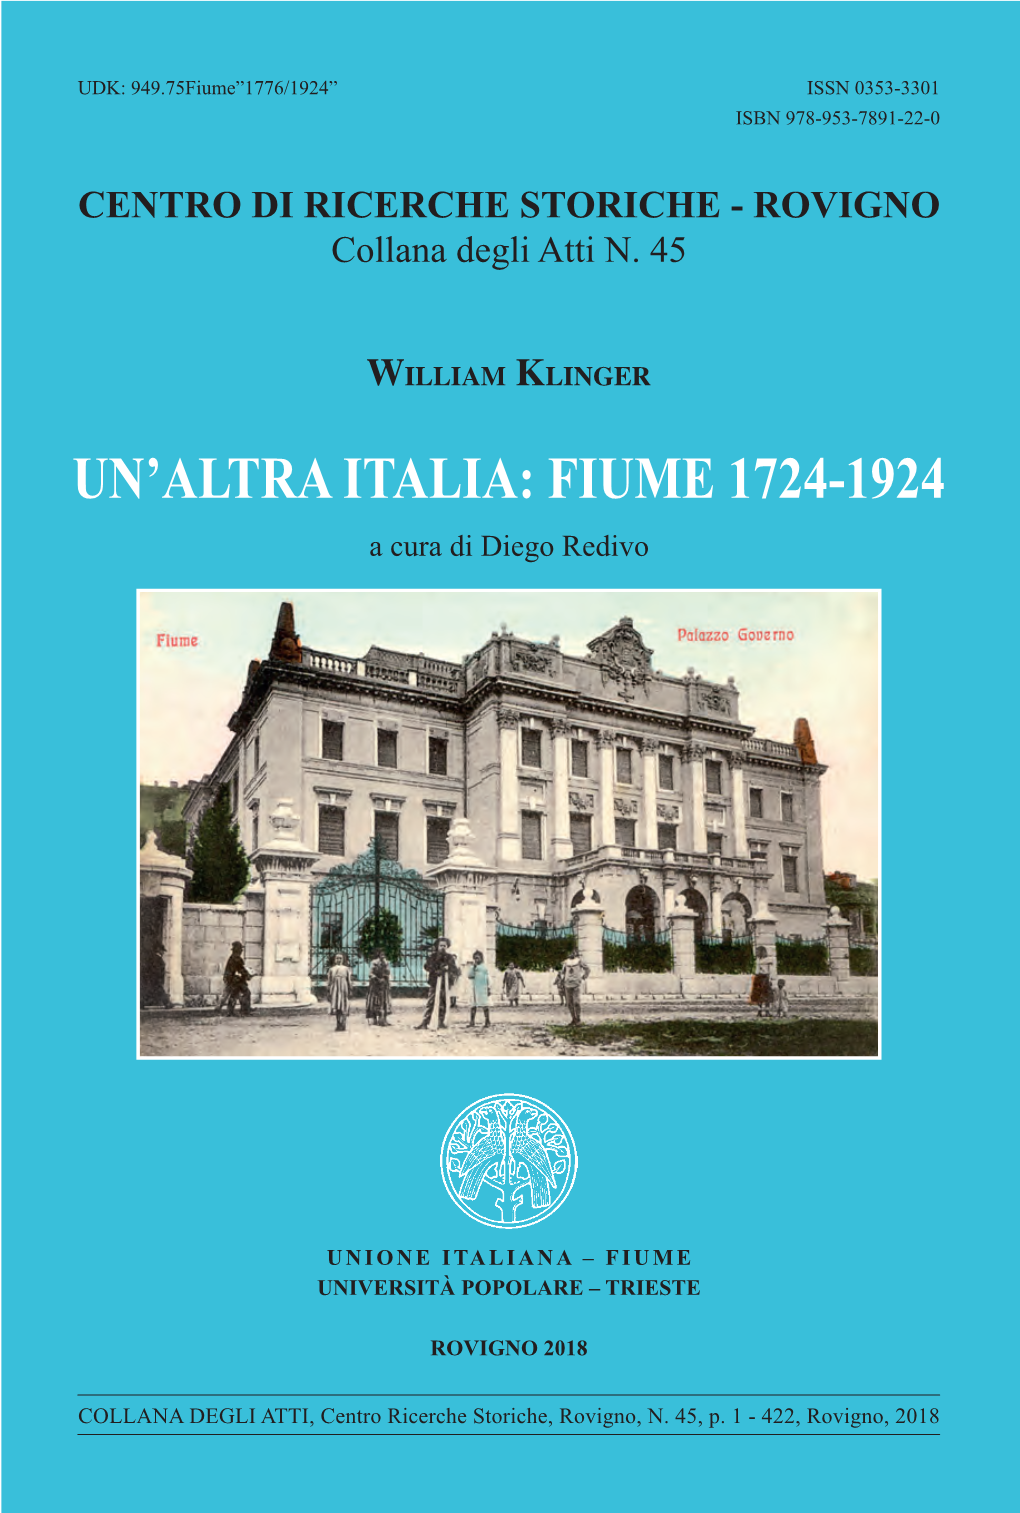 Un'altra Italia: Fiume 1724-1924